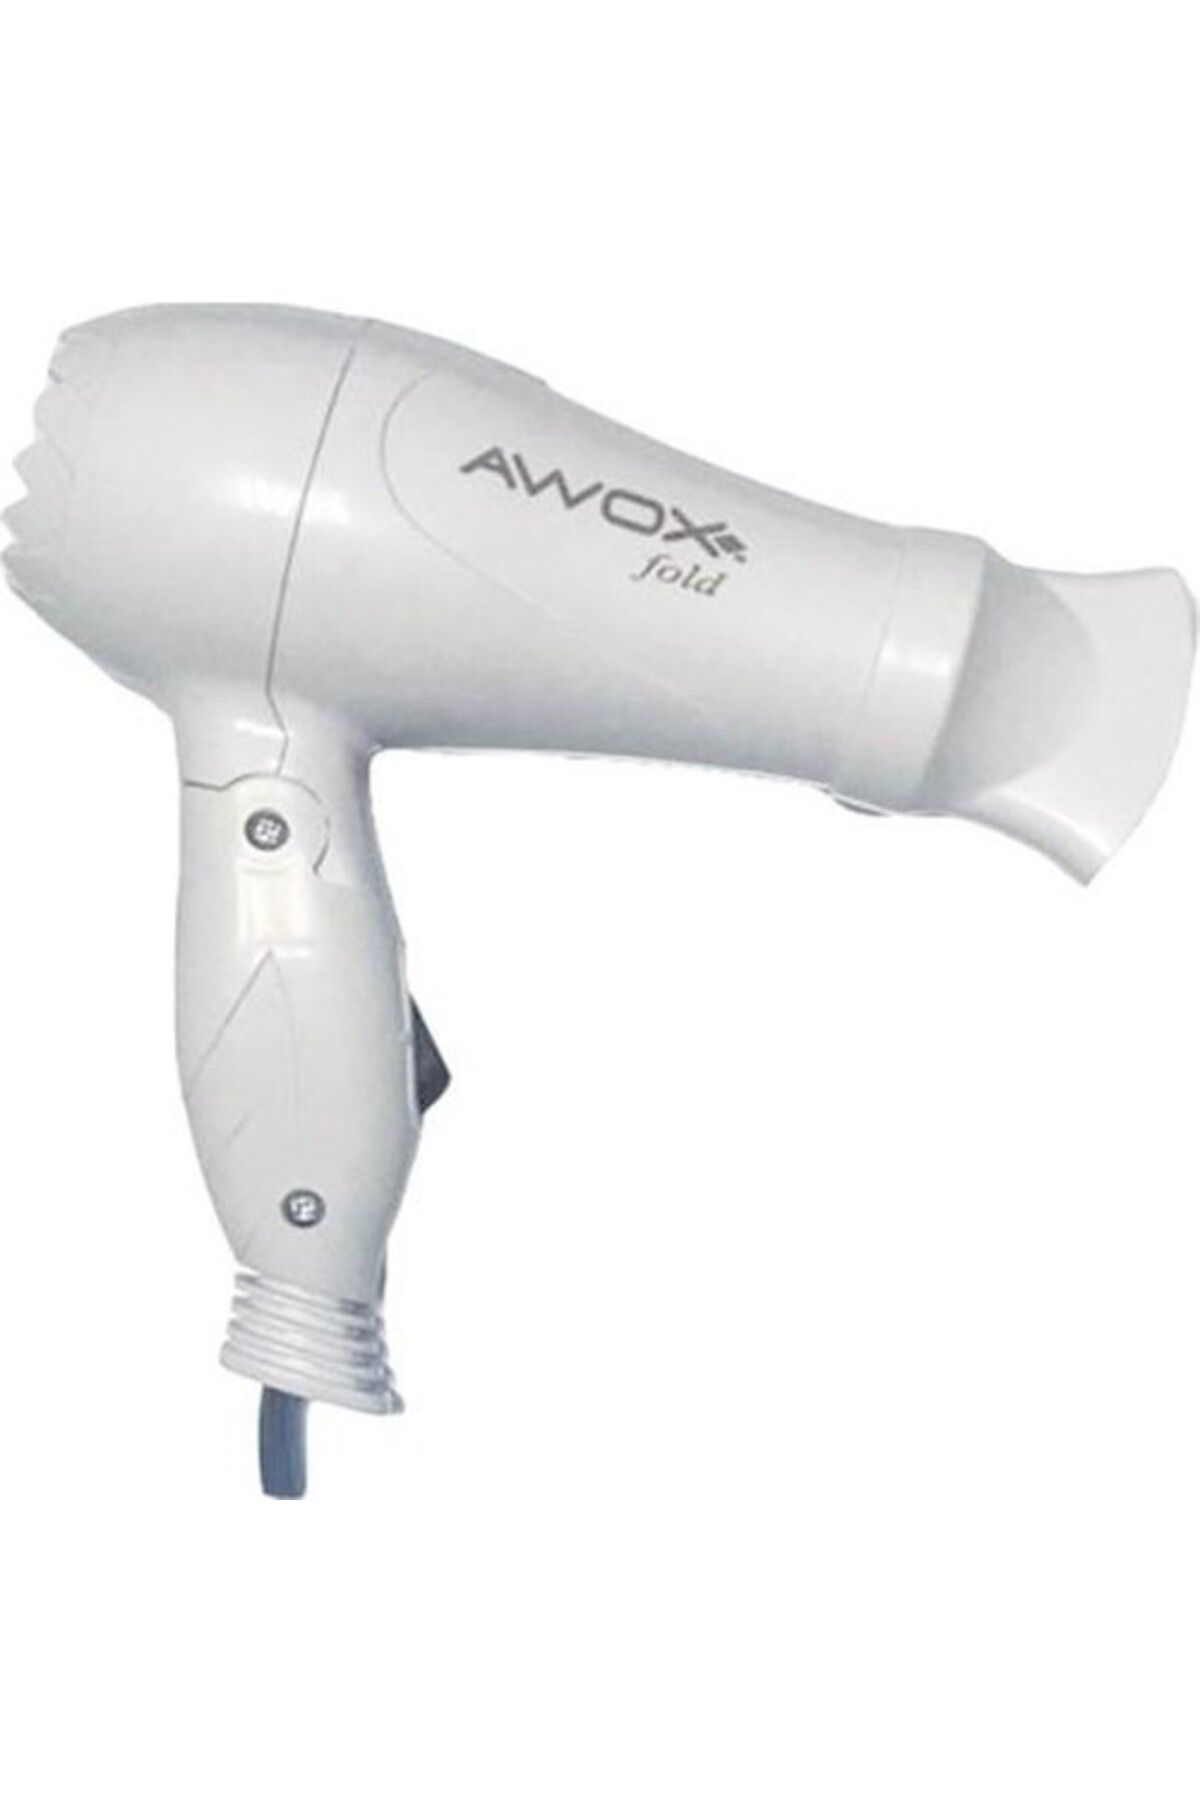 AWOX Fold Katlanabilir Saç Kurutma Makinesi Beyaz